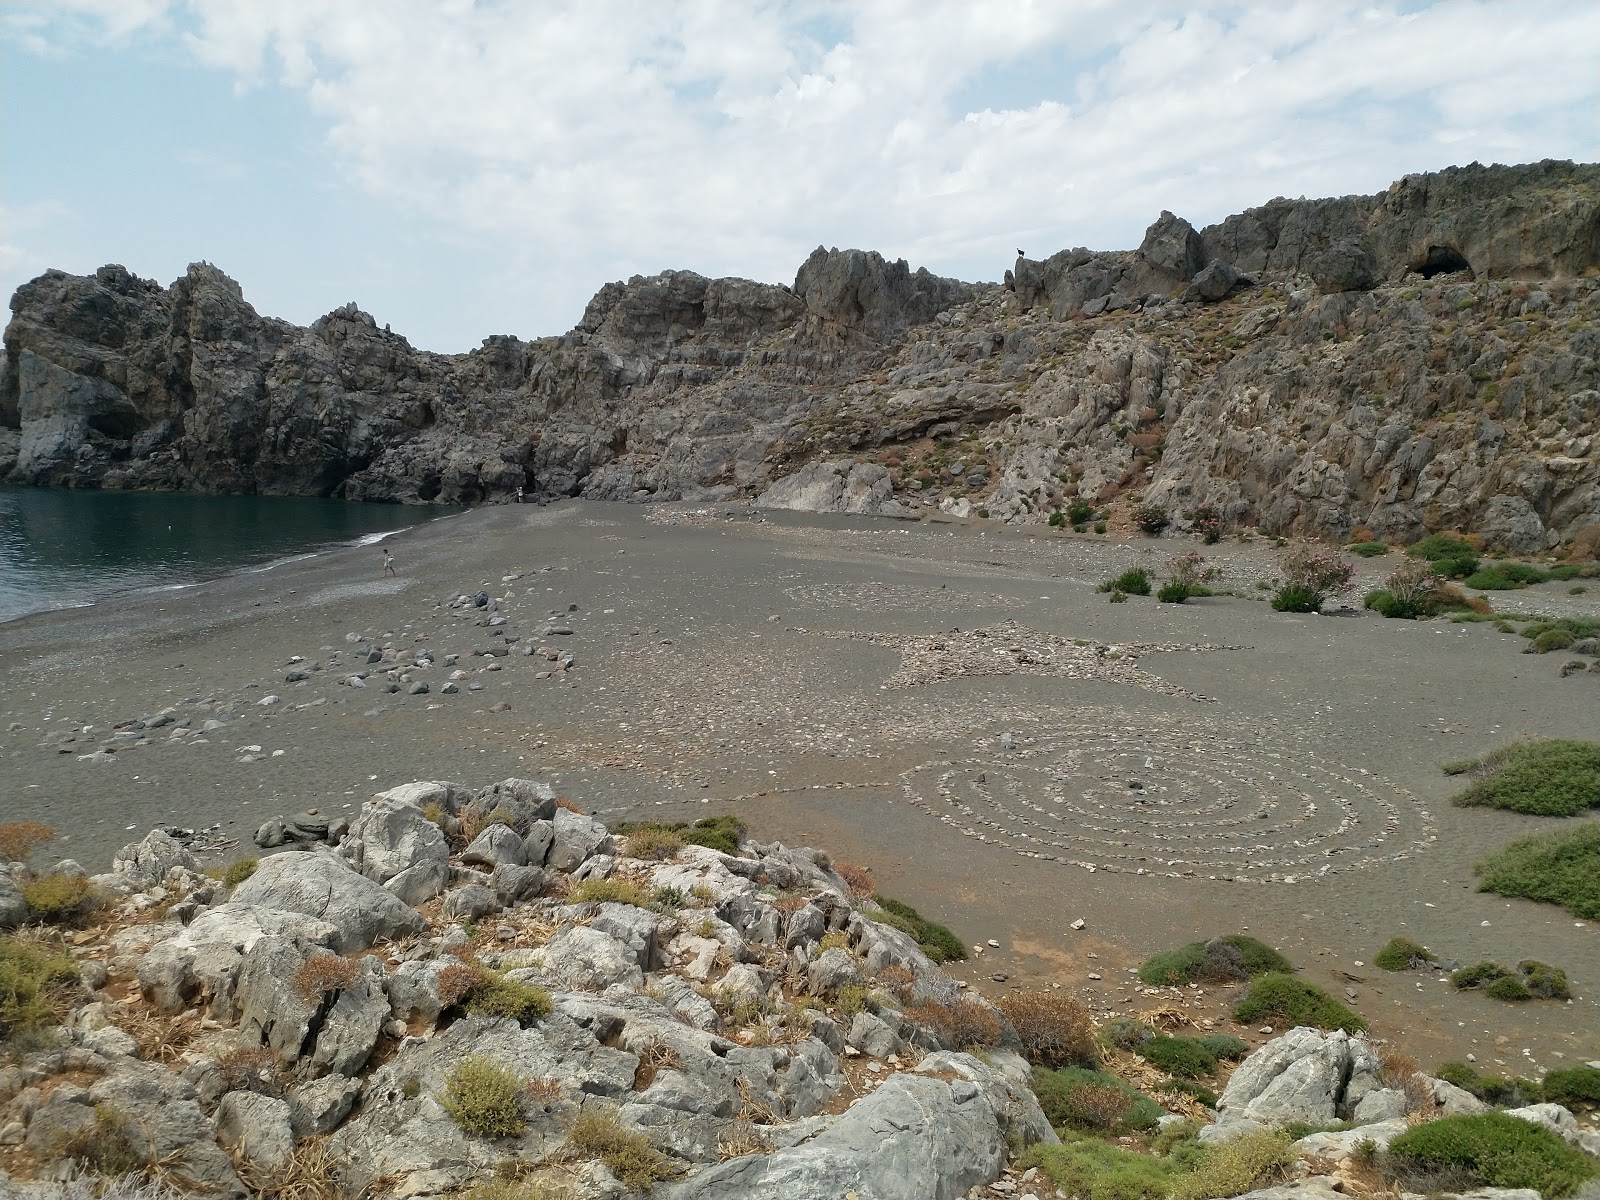 Zdjęcie Trachoulas beach położony w naturalnym obszarze